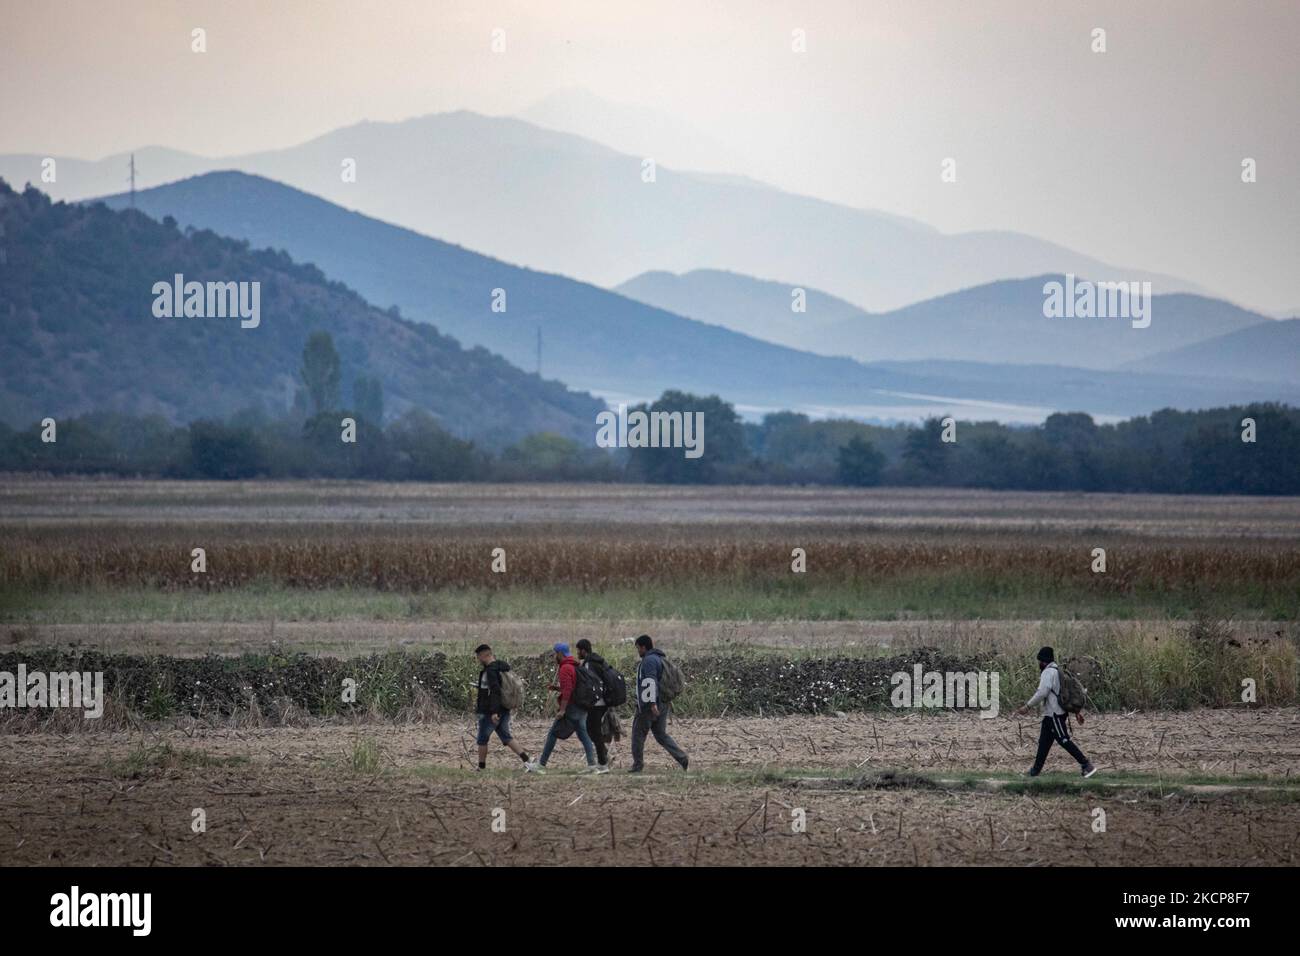 Asylbewerber versuchen, die griechisch-nordmazedonischen Grenzen zu überqueren, um der 2015-2016 während der syrischen Flüchtlingskrise berühmten Balkanroute zu folgen, von Idomeni, Griechenland, nach Gevgelija, Nord-Mazedonien, den Bahnschienen und dem Bahnhof folgend, um dann Mittel- und Nordeuropa zu erreichen. Flüchtlinge und Migranten werden auf den Feldern auf der griechischen Seite mit den nordmazedonischen Bergen im Hintergrund vor dem Zaun, der die beiden Länder trennt, gesehen und versuchen, die Grenzen zu erreichen und zu passieren. Die kleinen Gruppen sind überwiegend männlich dominiert aus Afghanistan, Neuankömmlinge, die ihre Reise nach hinten begannen Stockfoto